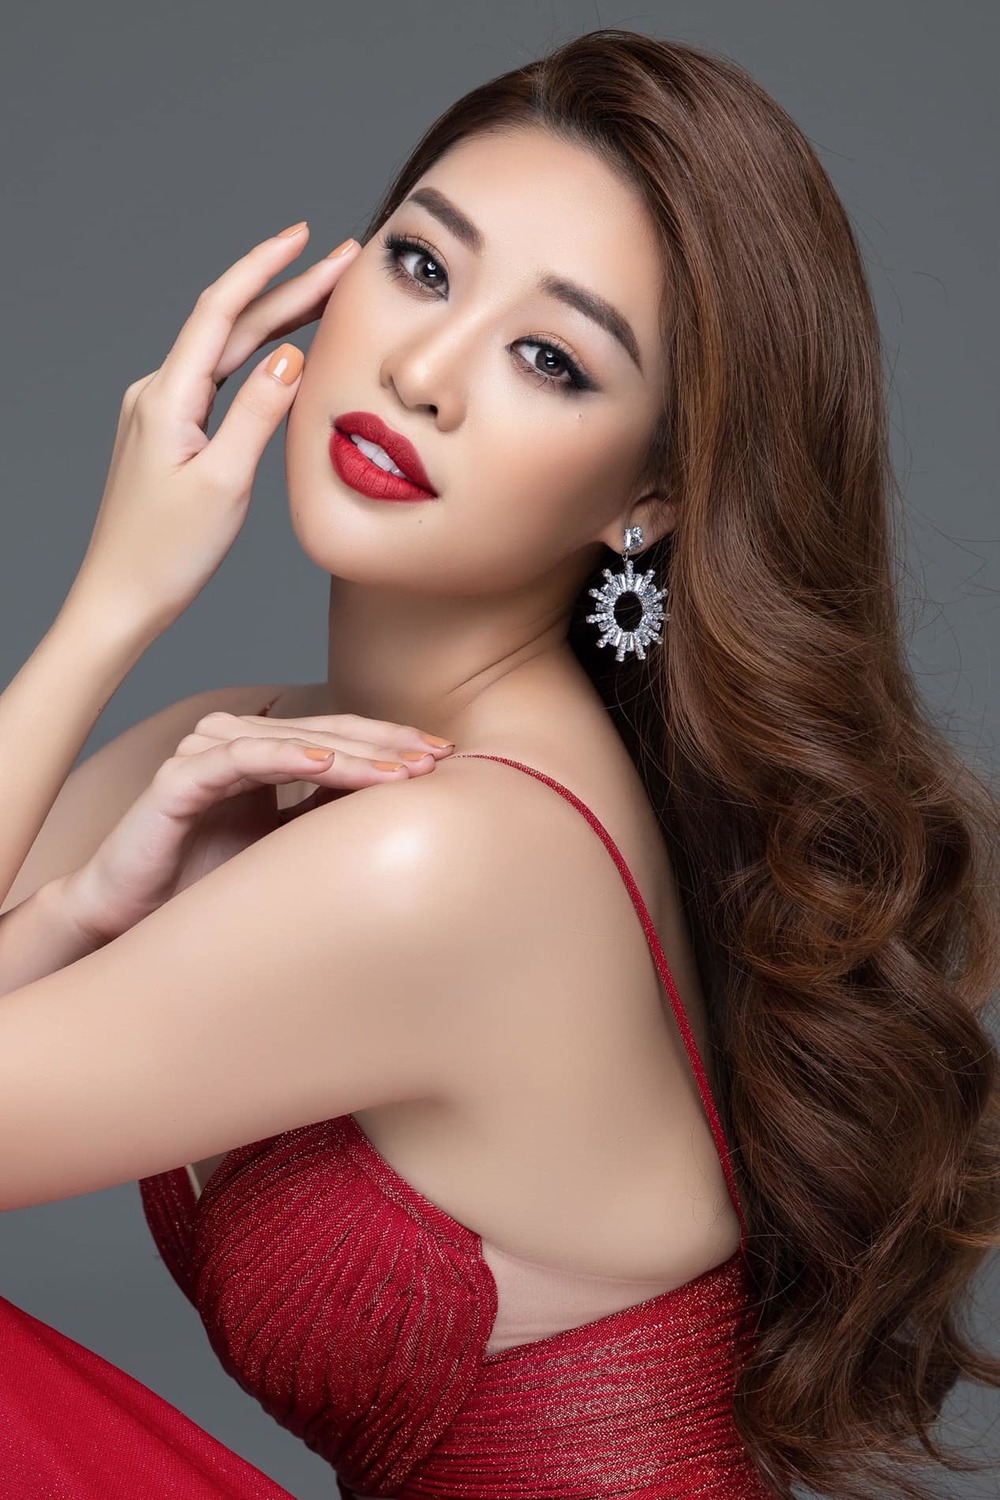  
Hoa hậu Khánh Vân khoe đường nét gương mặt cực cuốn hút với môi son đỏ. (Ảnh: FB Nguyễn Trần Khánh Vân)